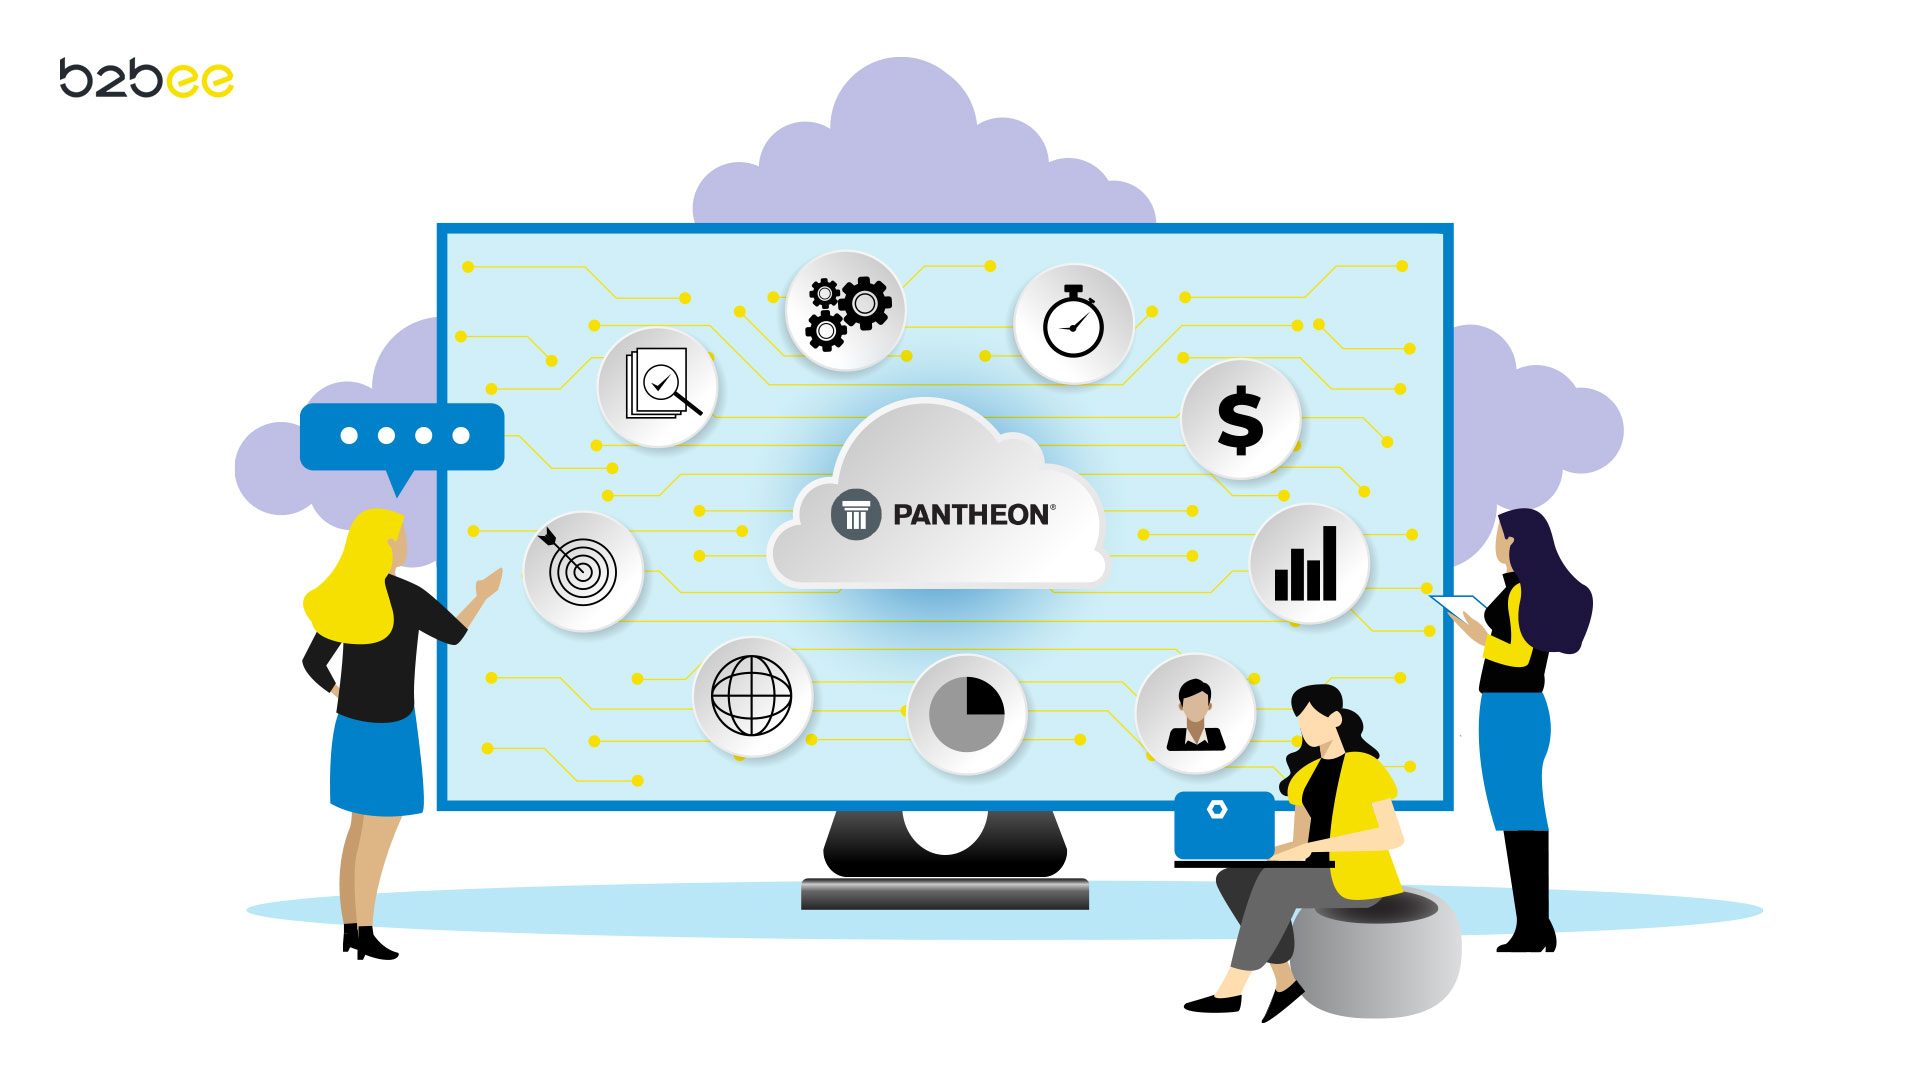 B2Bee aplikacija za terensku prodaju povezana na Pantheon softver